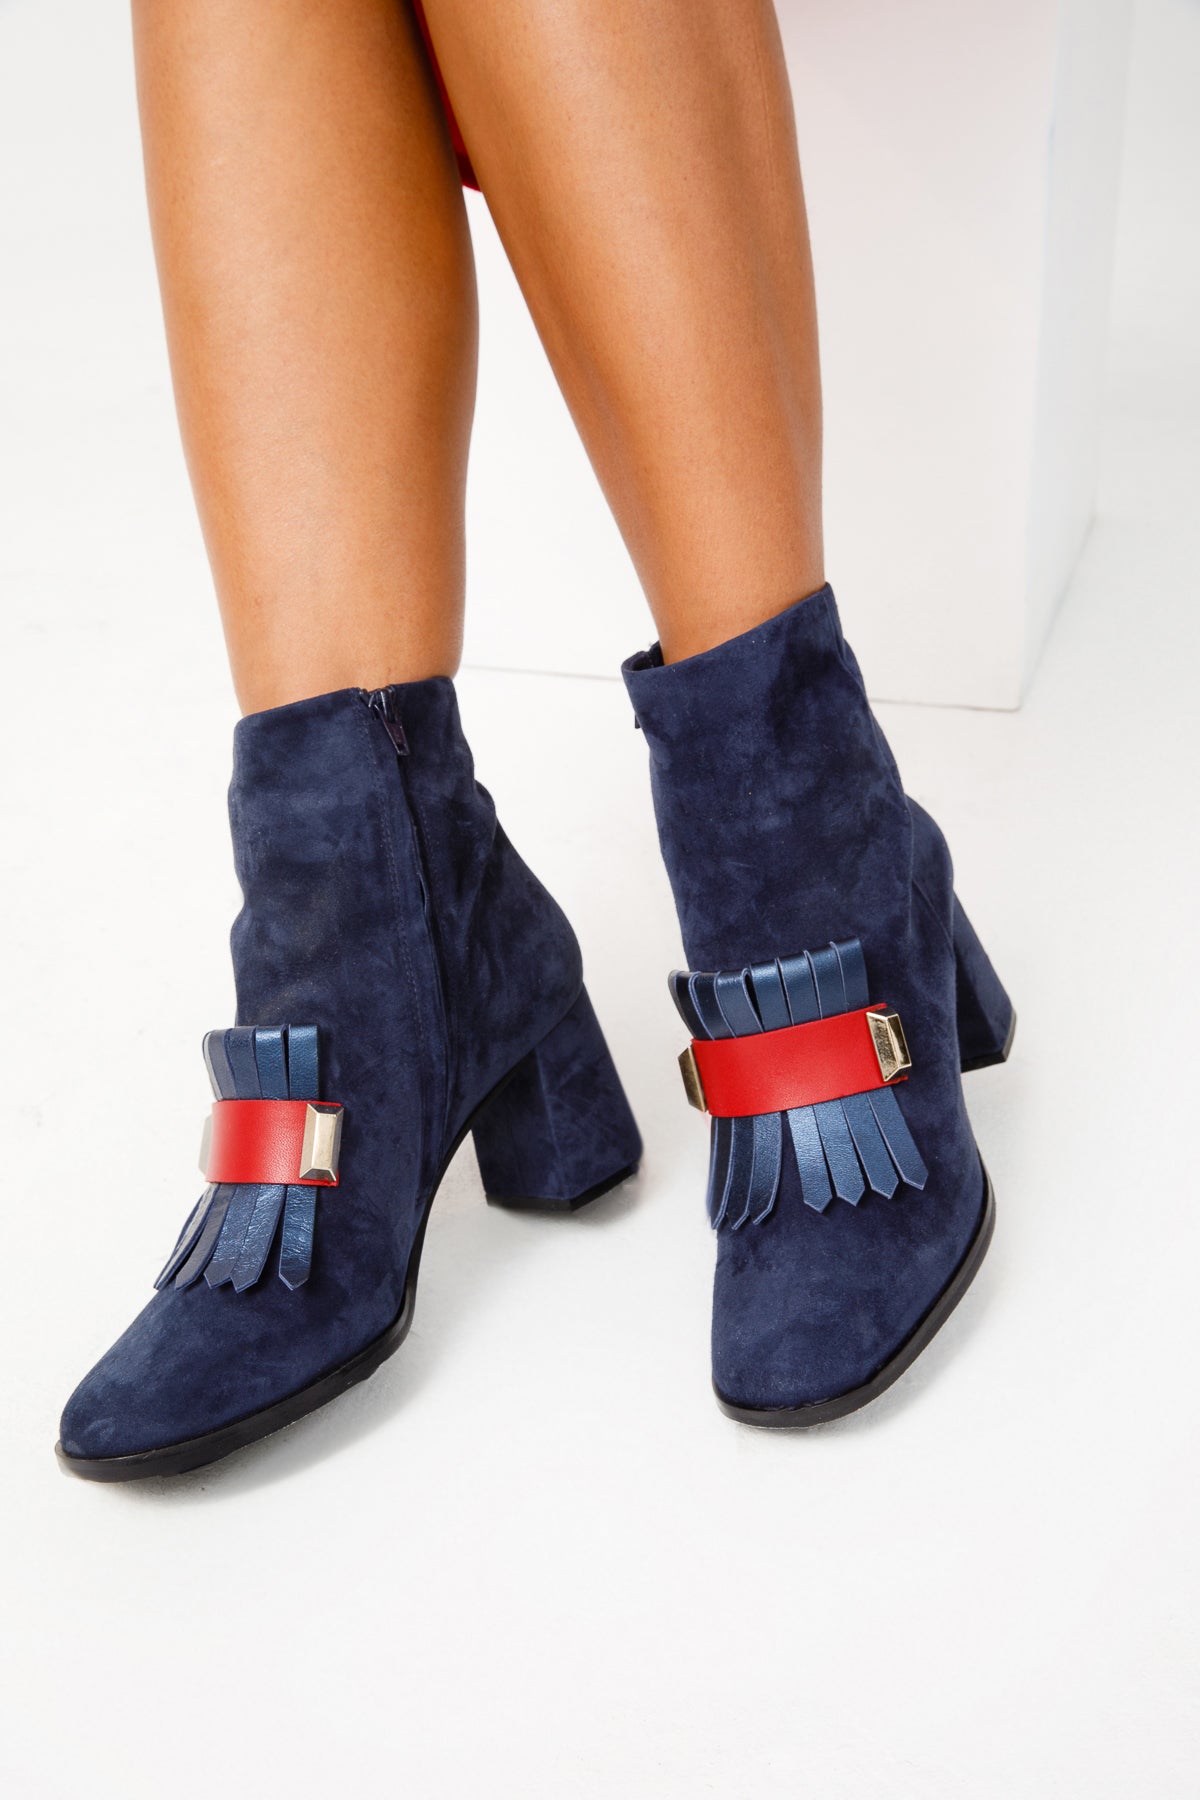 The Luksor Navy Blue Suede Leather Block Heel Women Boot